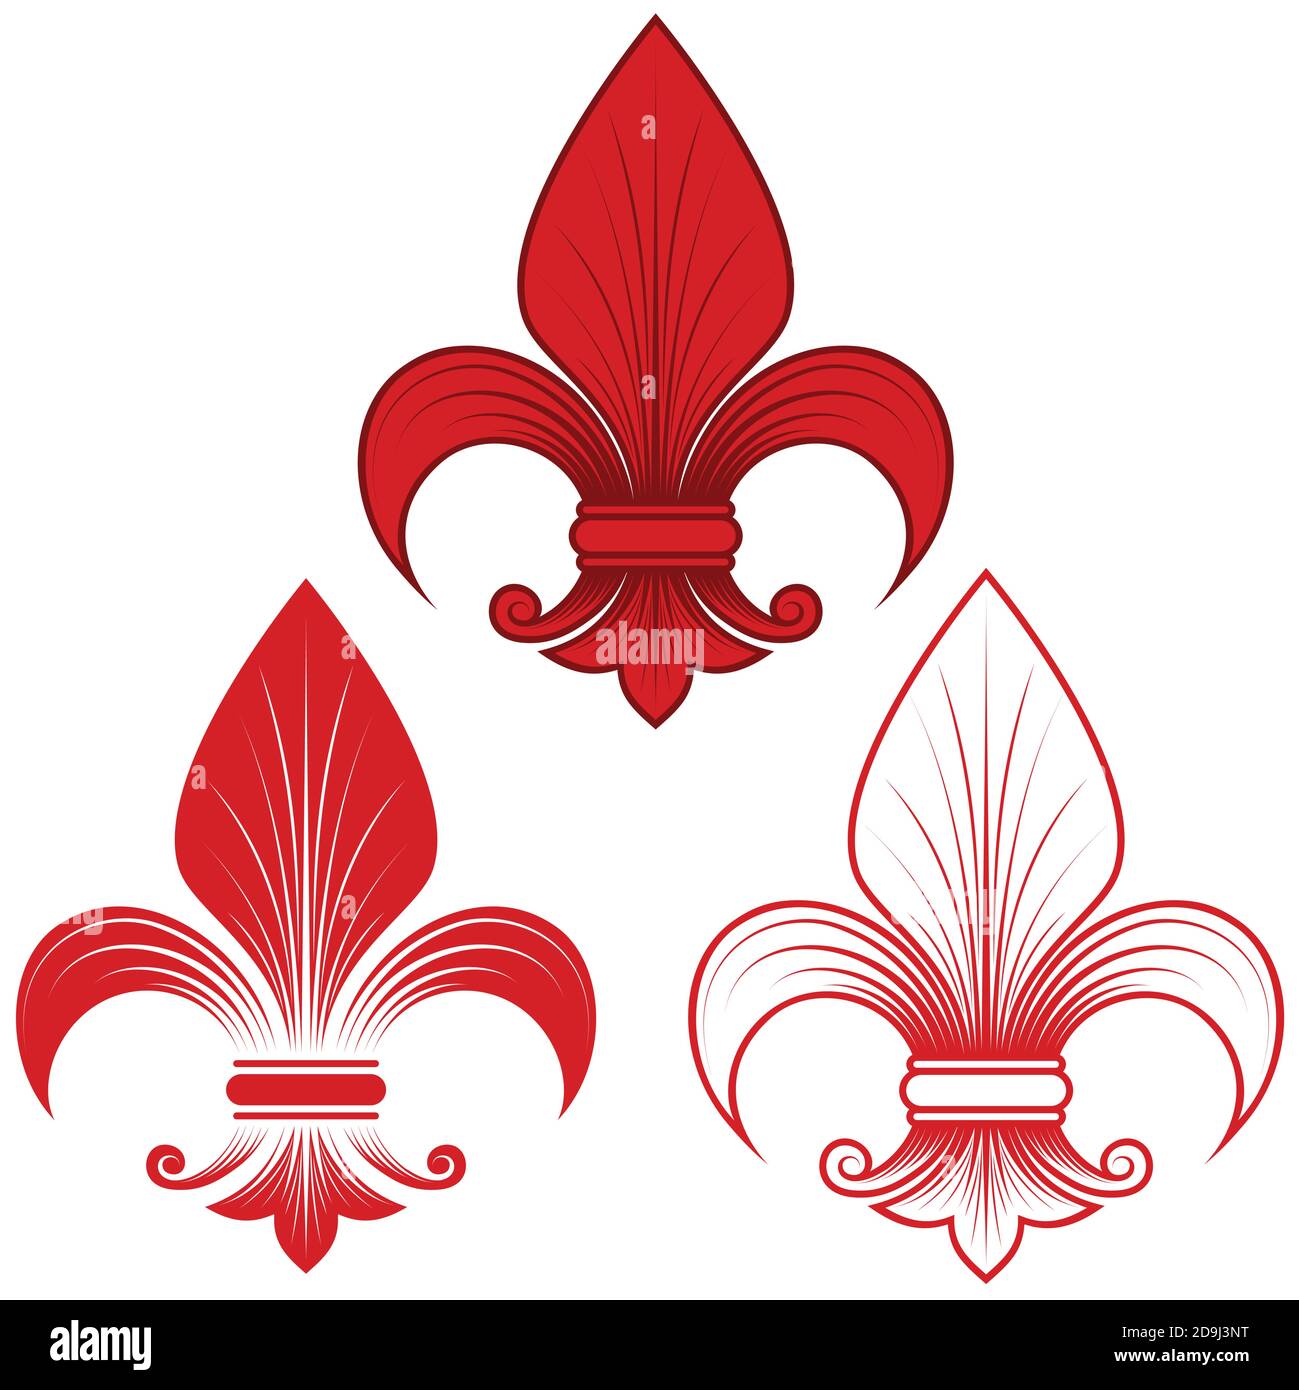 Disegno vettoriale del fleur de lis in tre stili grafici in rosso, rappresentazione del fiore di giglio, un simbolo usato nell'araldica medievale. Tutto sulla parte posteriore bianca Illustrazione Vettoriale